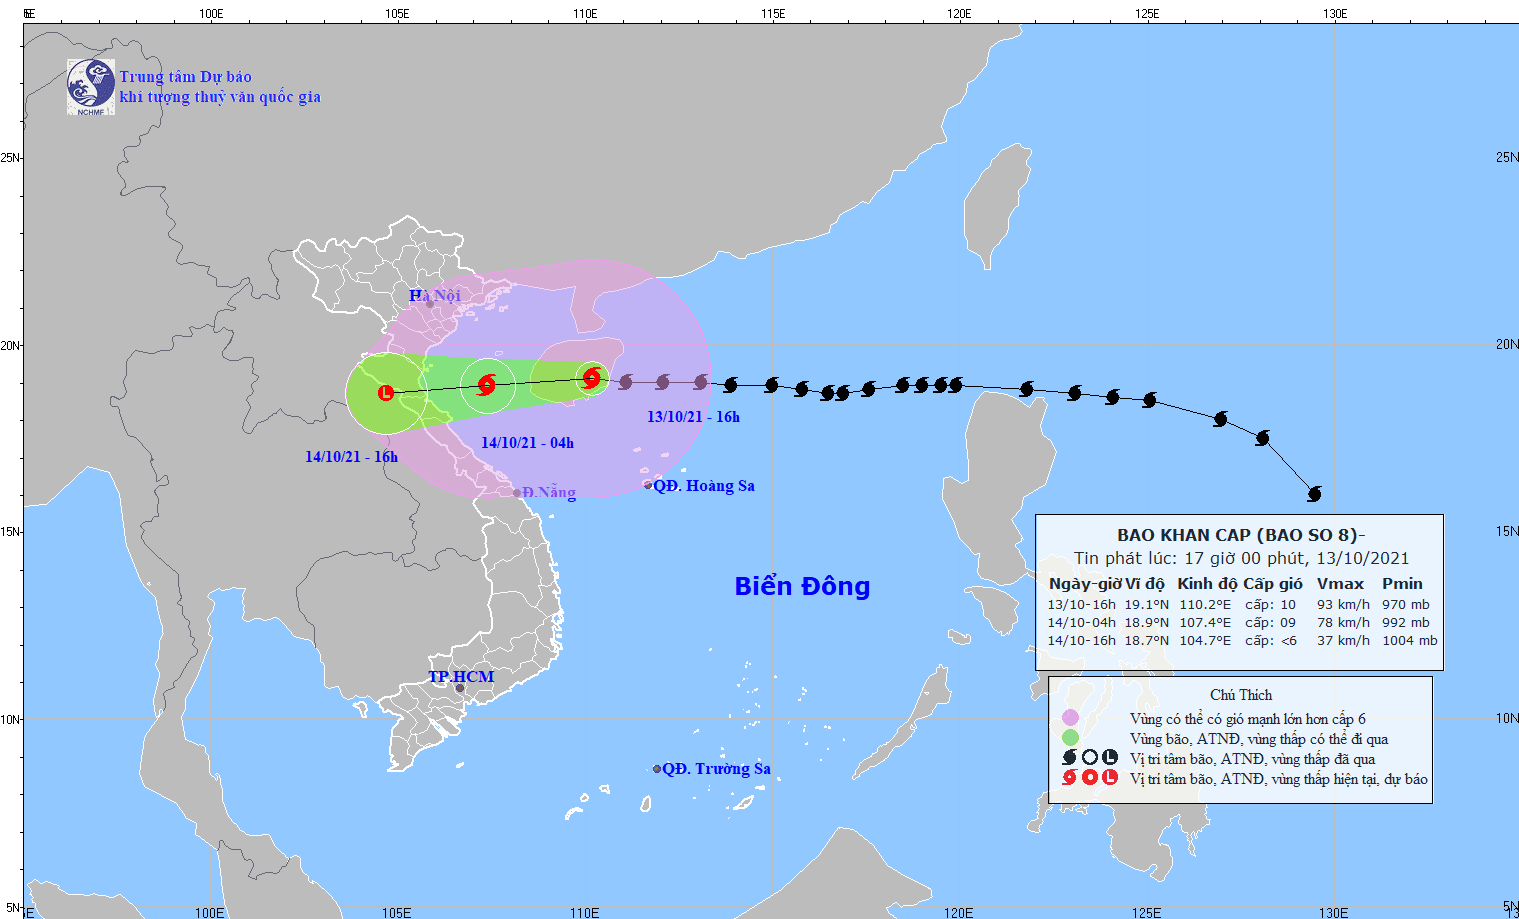 Cập nhật tin bão mới nhất: Bão số 8 di chuyển tốc độ 25-30km/h, chỉ cách Thanh Hóa 500km - Ảnh 1.